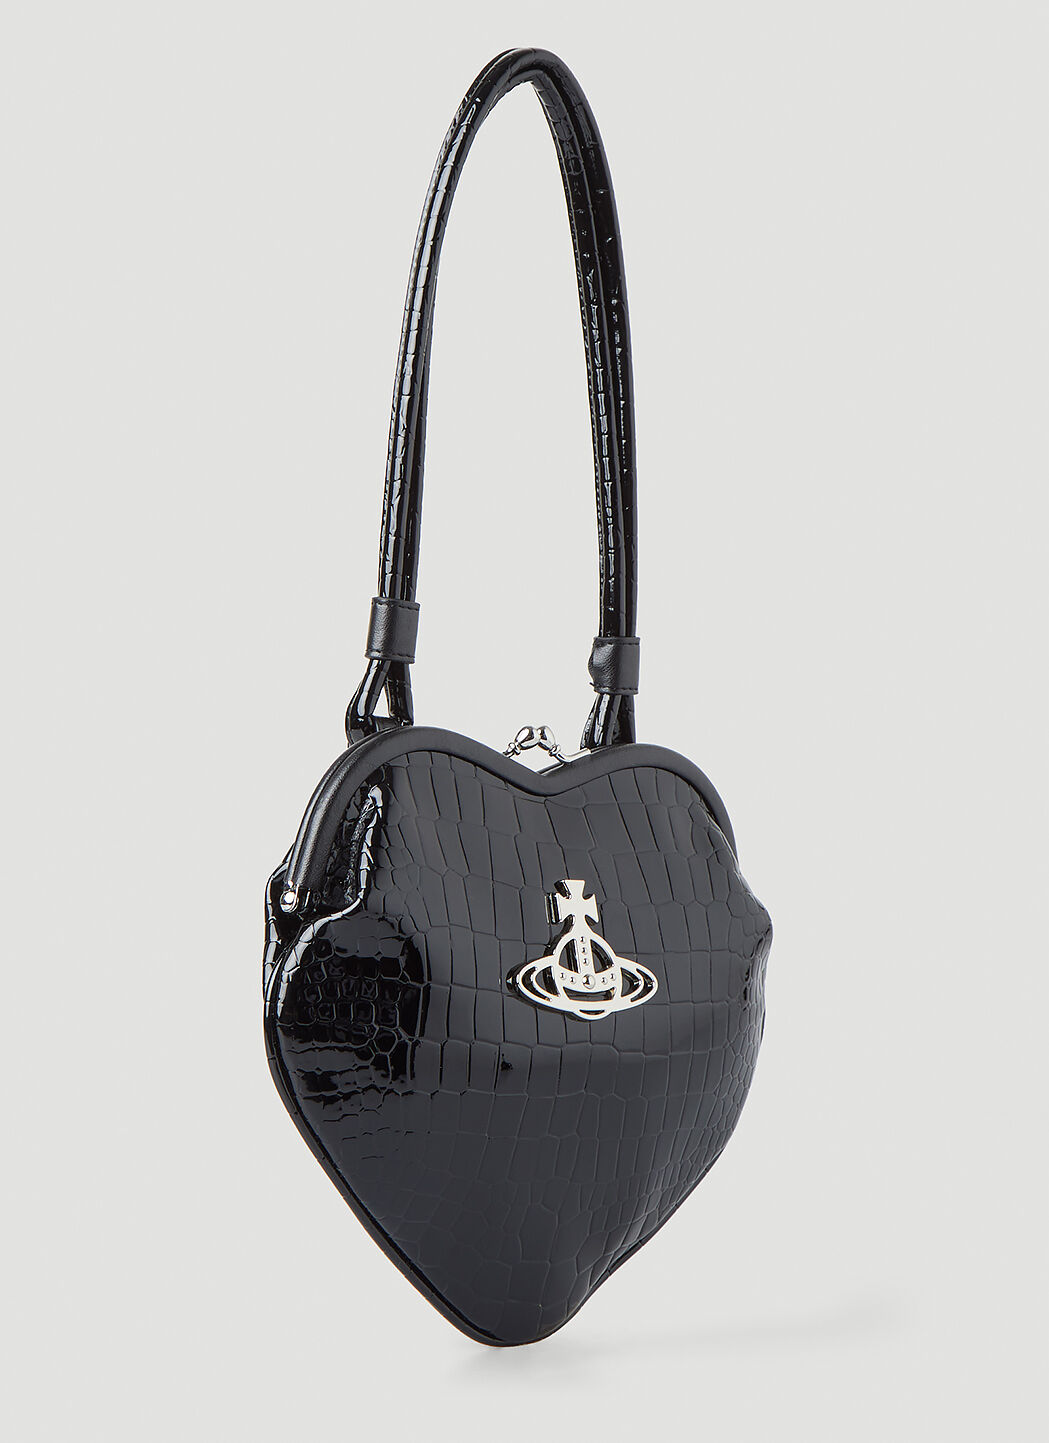 Vivienne Westwood Shoulder Bag Draped Hide Leather Grey, SUPER RARE!! | eBay